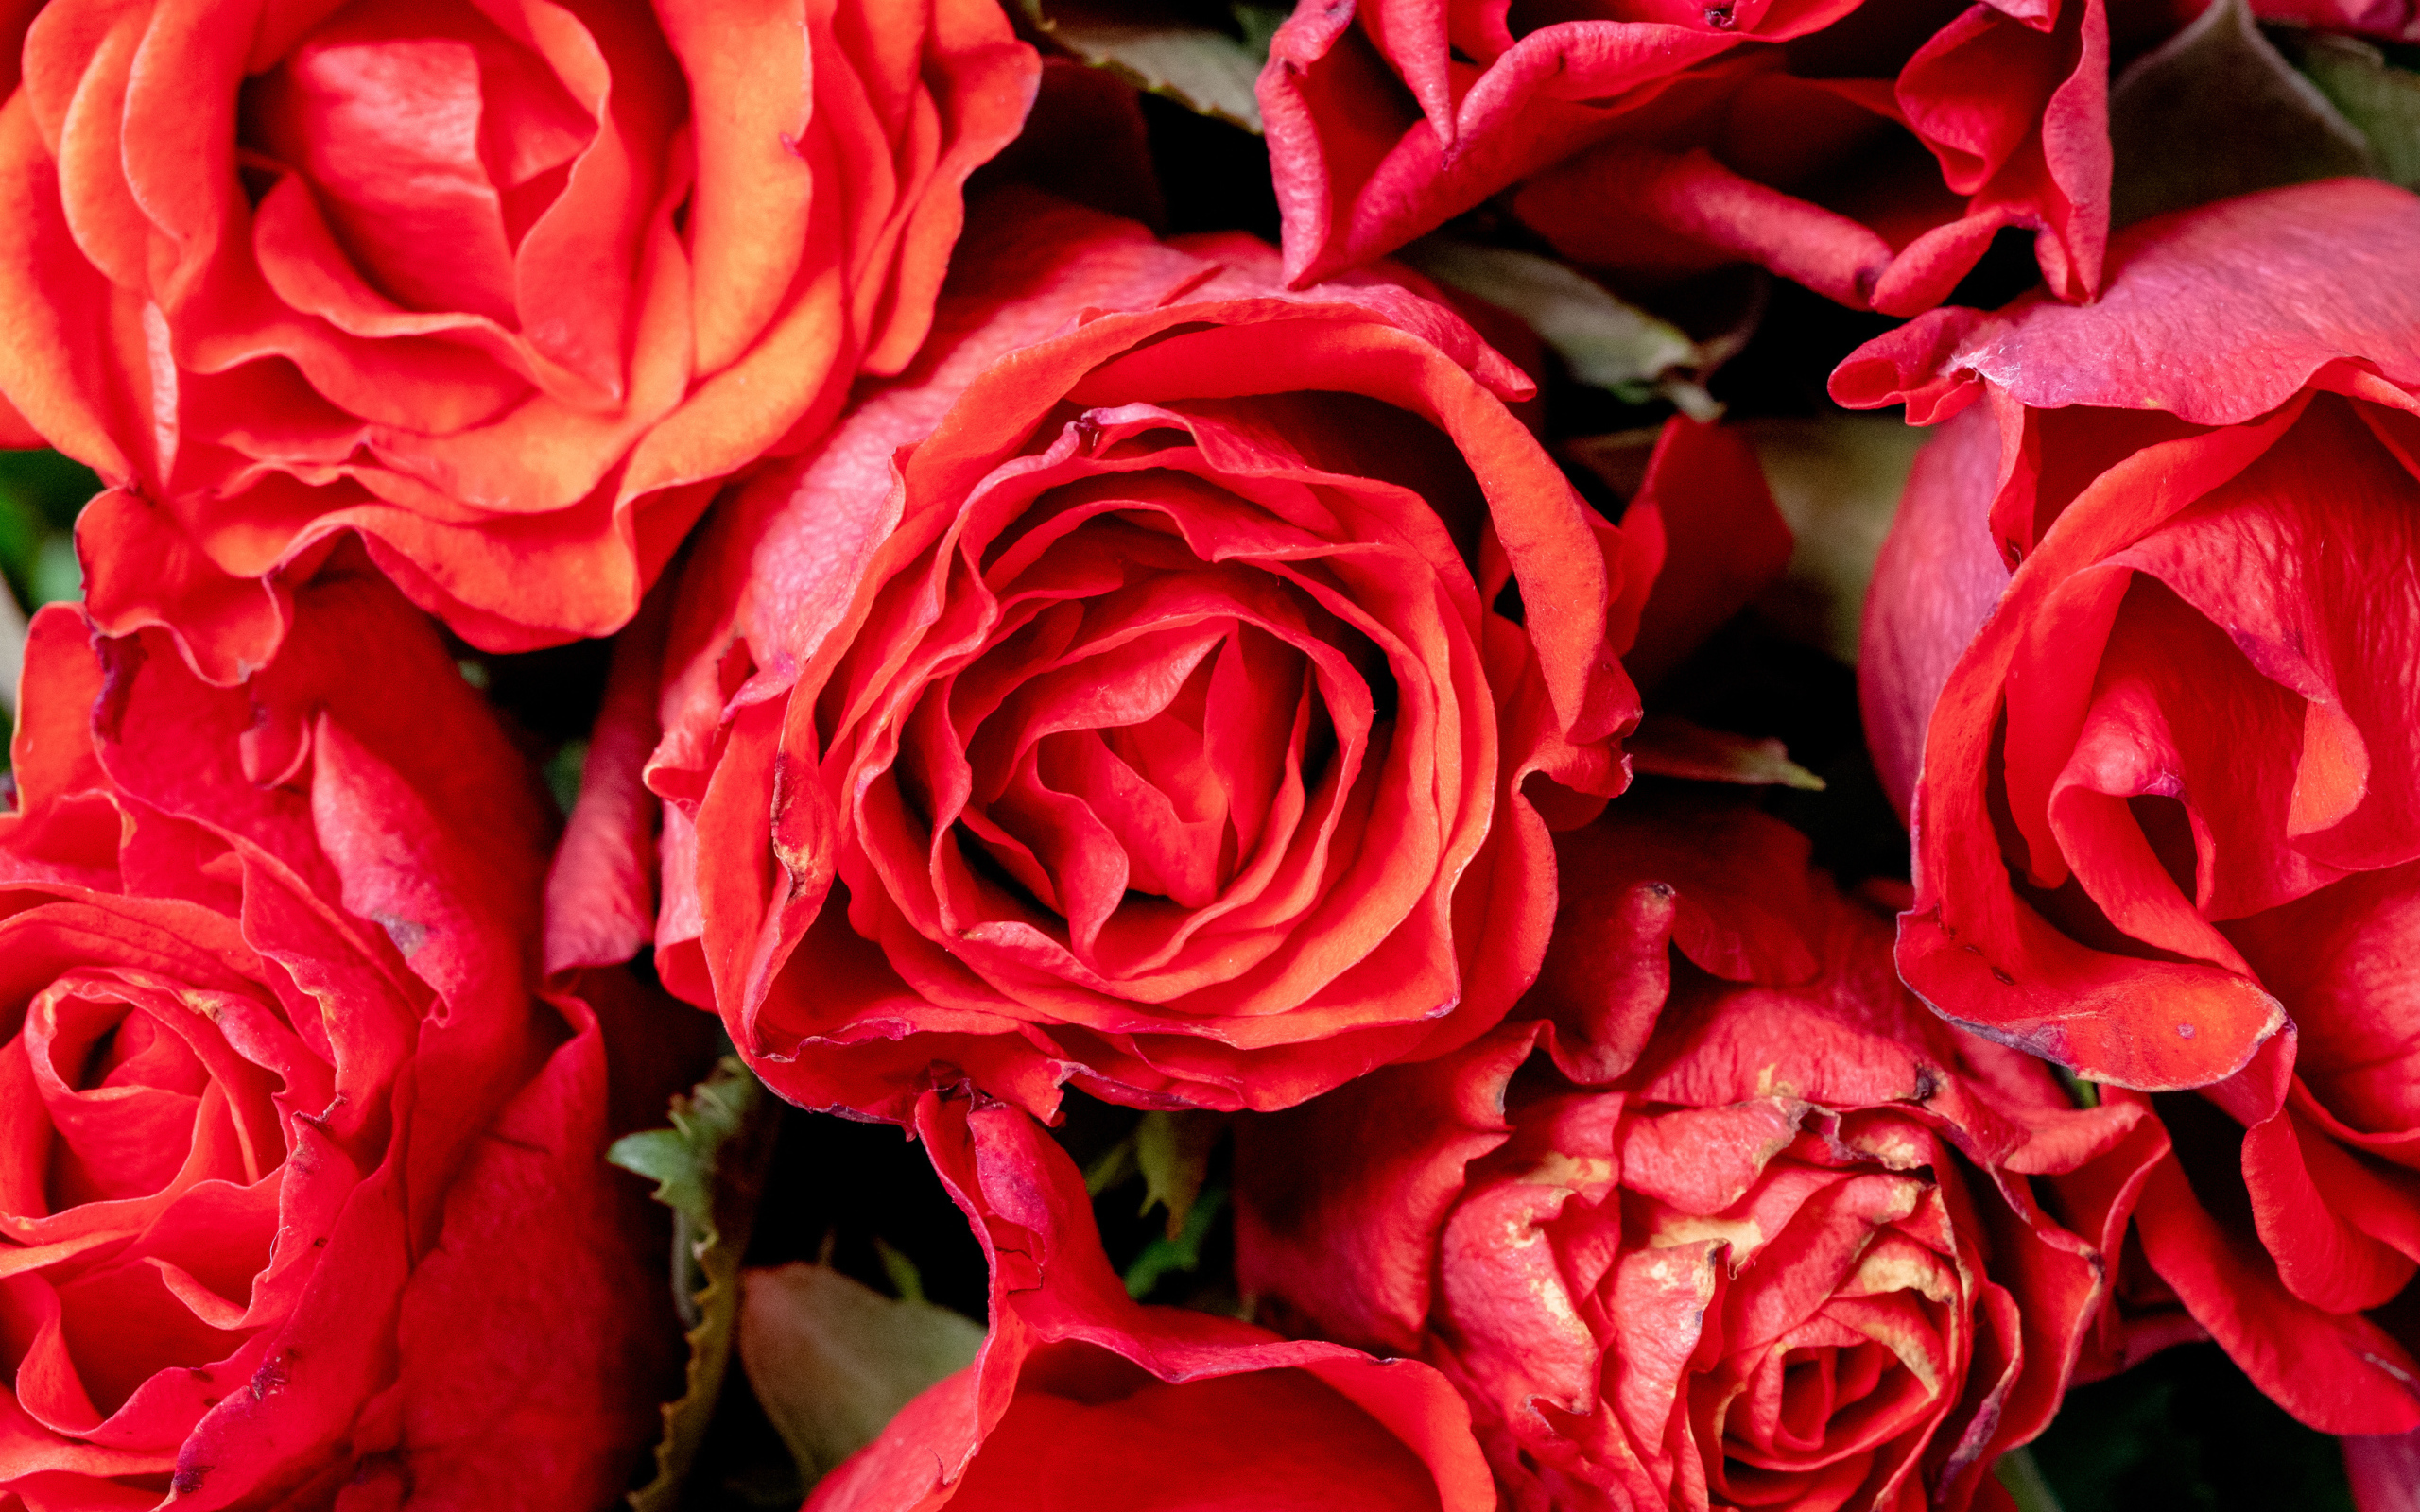 Beautiful roses with pink petals close-up